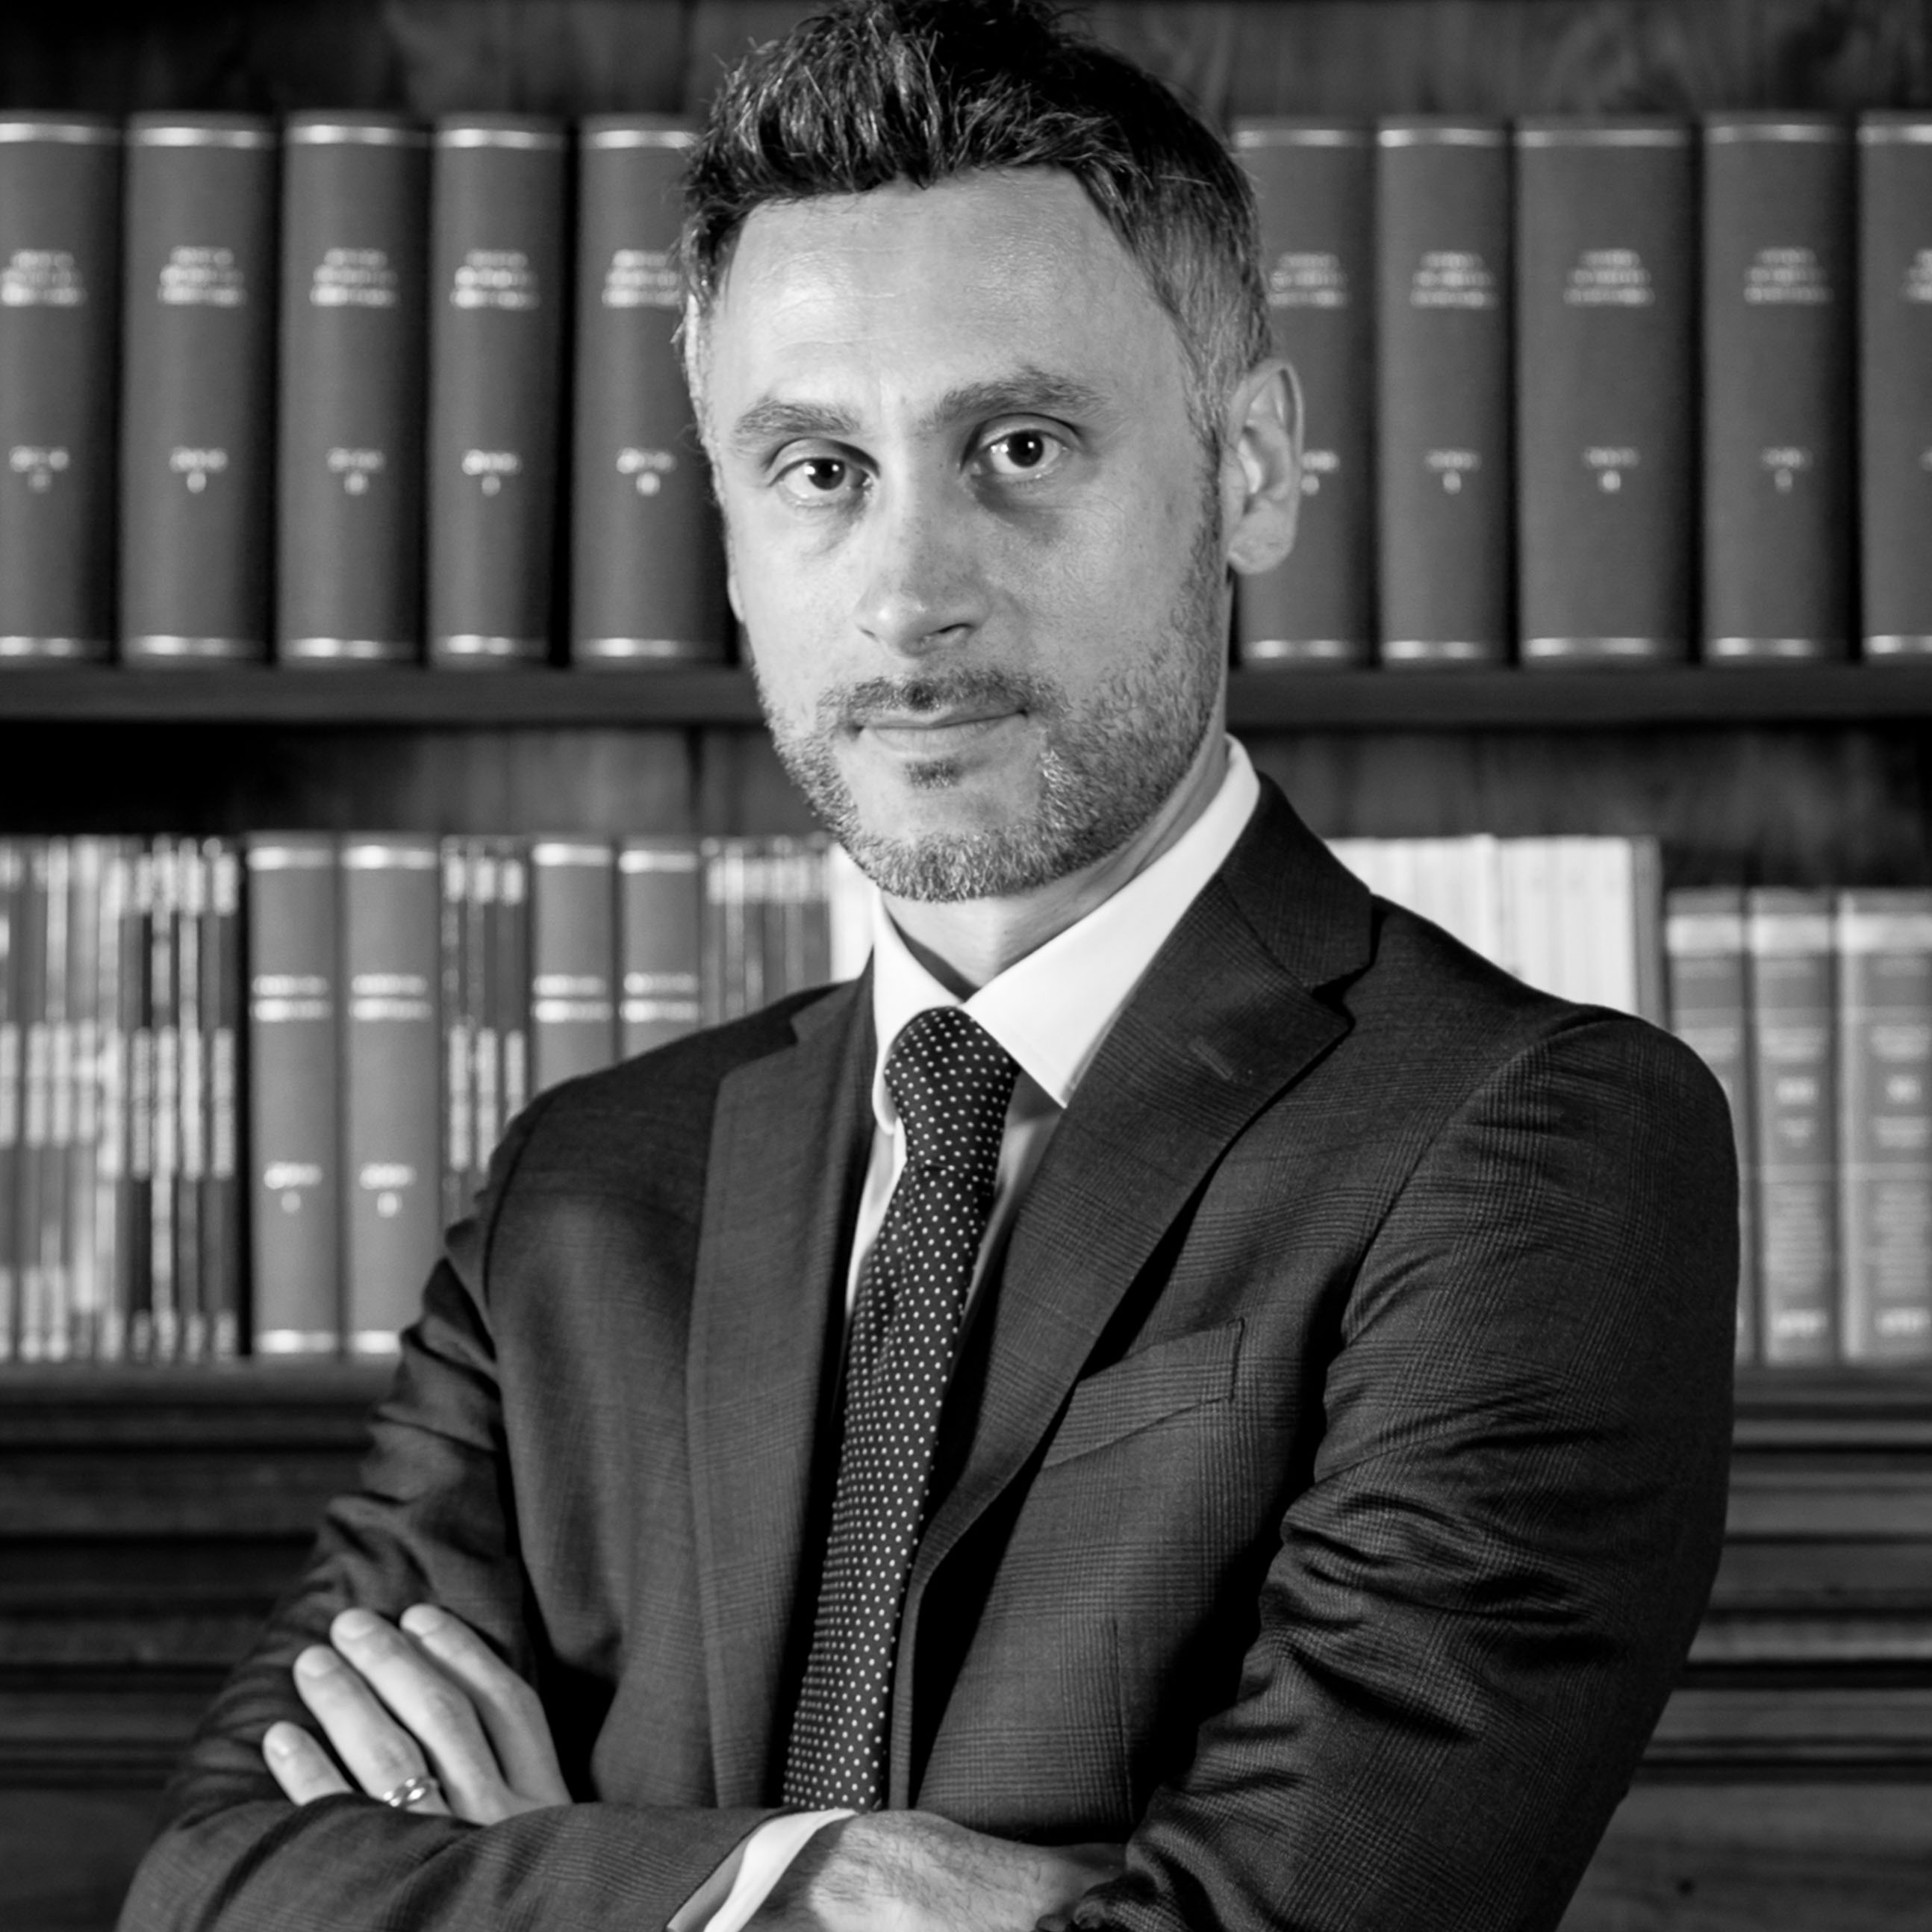 Avv. Giuseppe Salvi - Founding Partner DS Tax & Legal